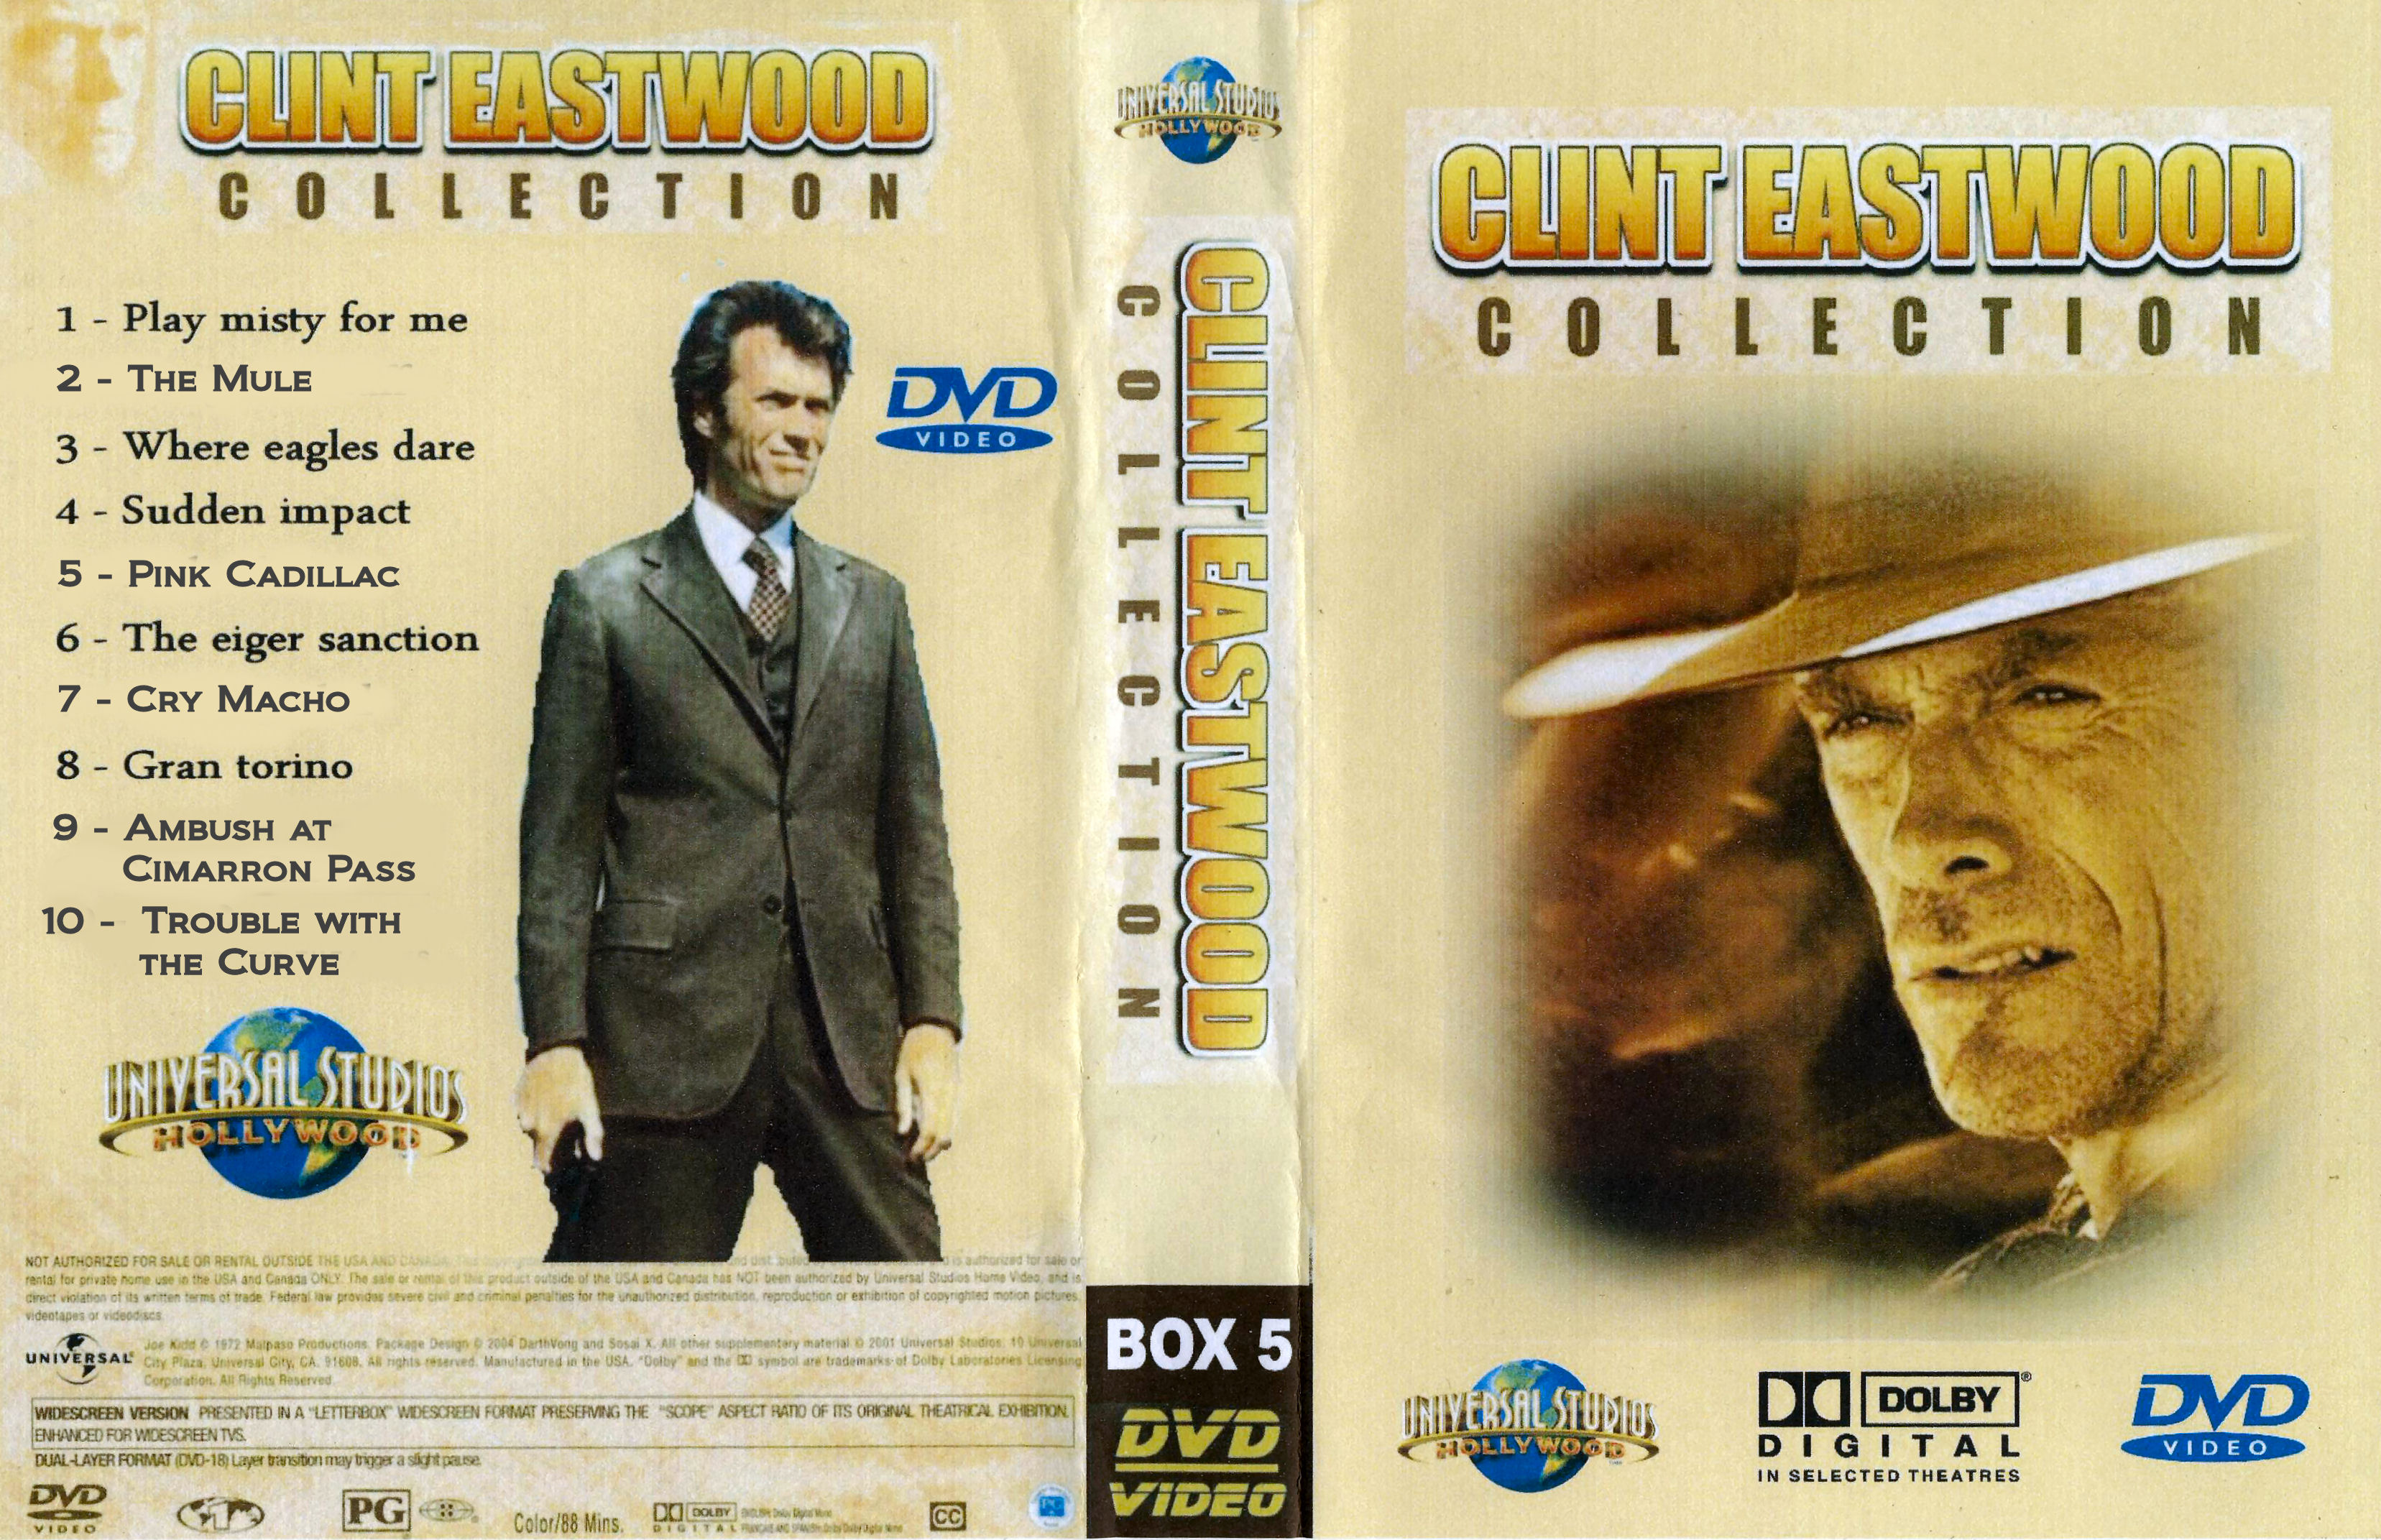 Clint Eastwood Collectie Box 5 DvD 1 van 10